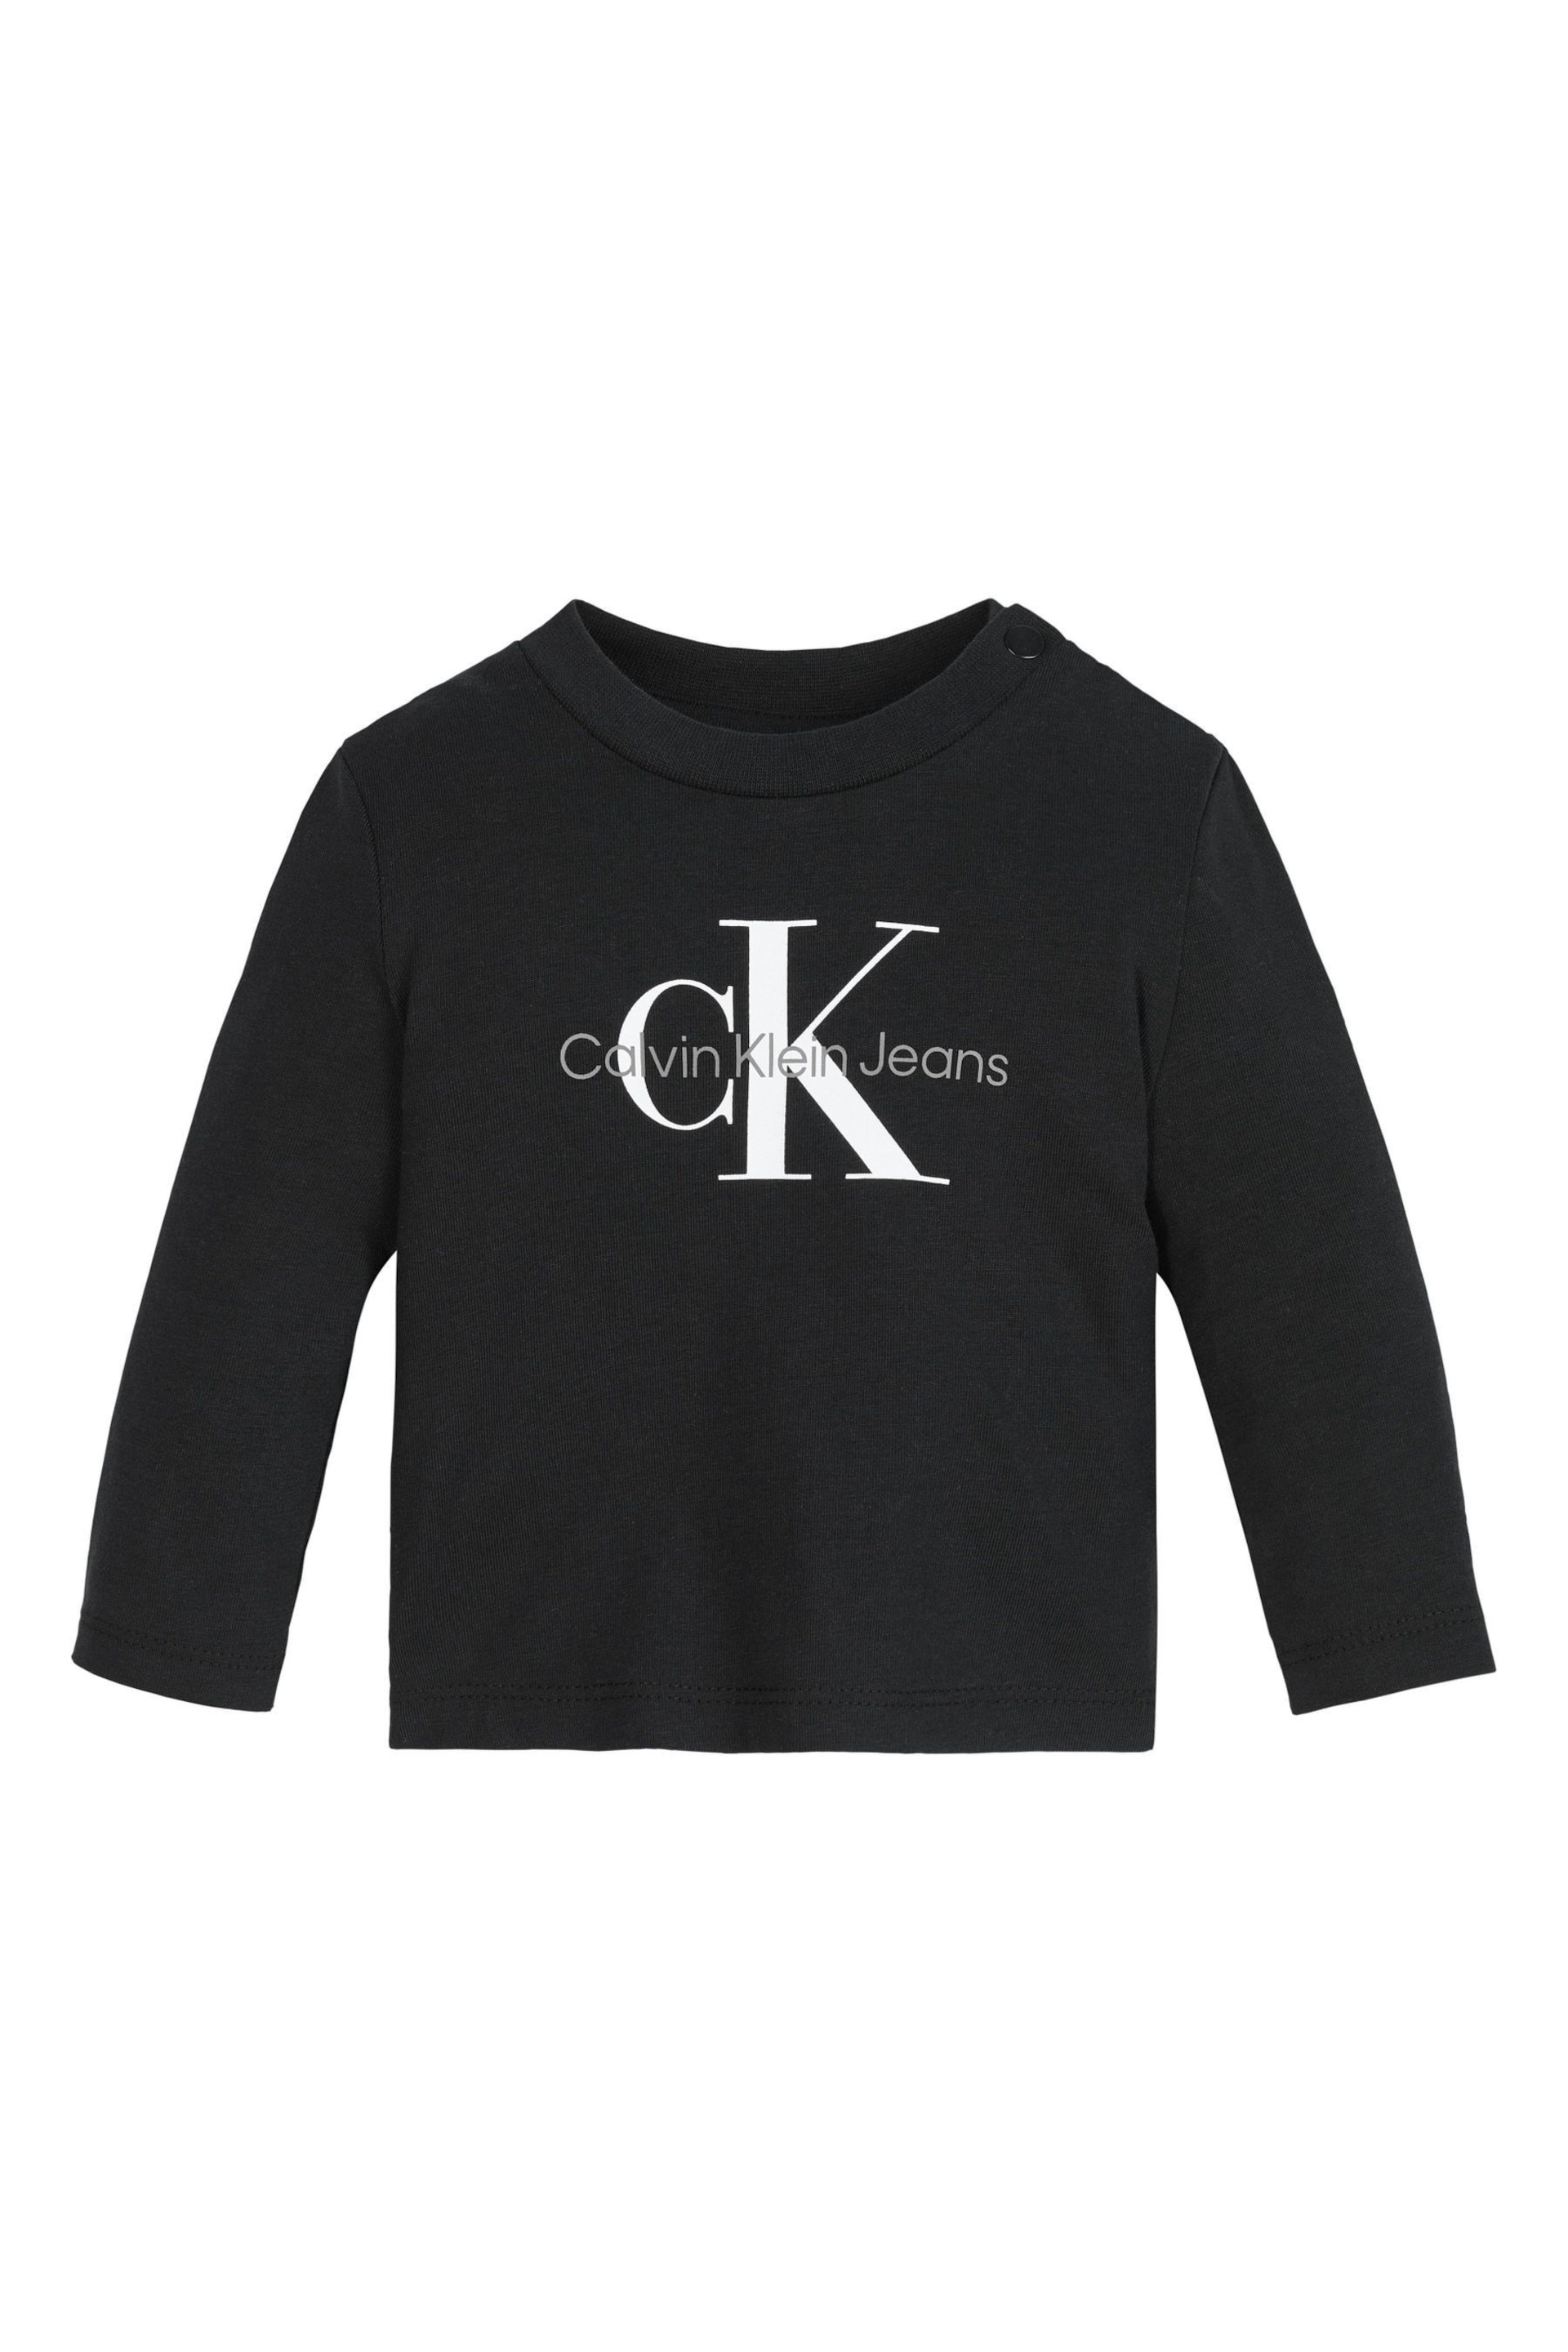 Calvin Klein Jeans Baby Monogram Long Sleeve Black Top - Image 1 of 3